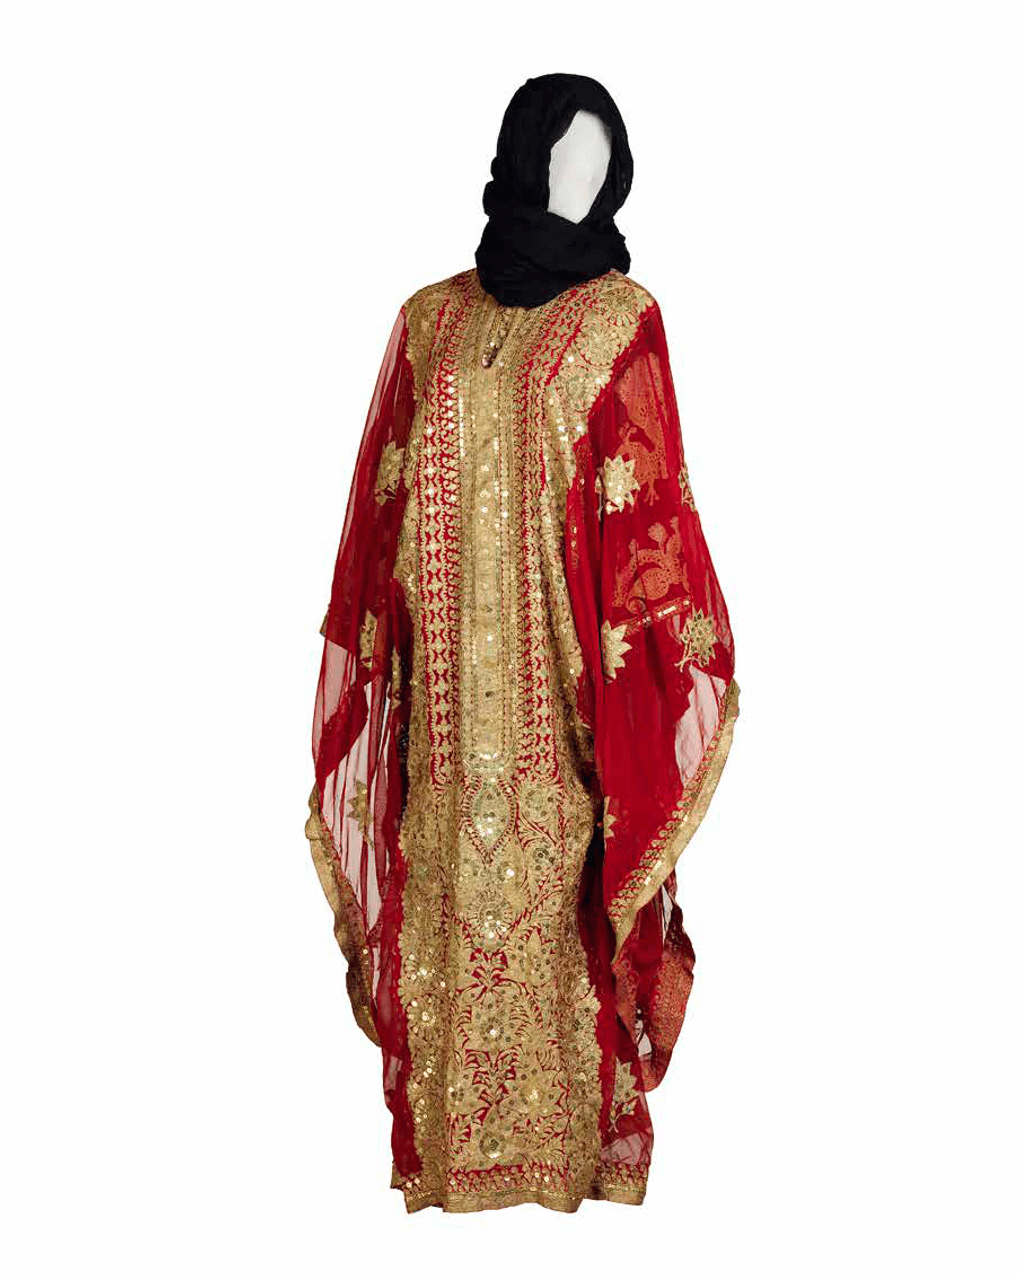 Праздничная накидка на платье. XX век. Фотография предоставлена Музеем шейха Фейсала, Катар